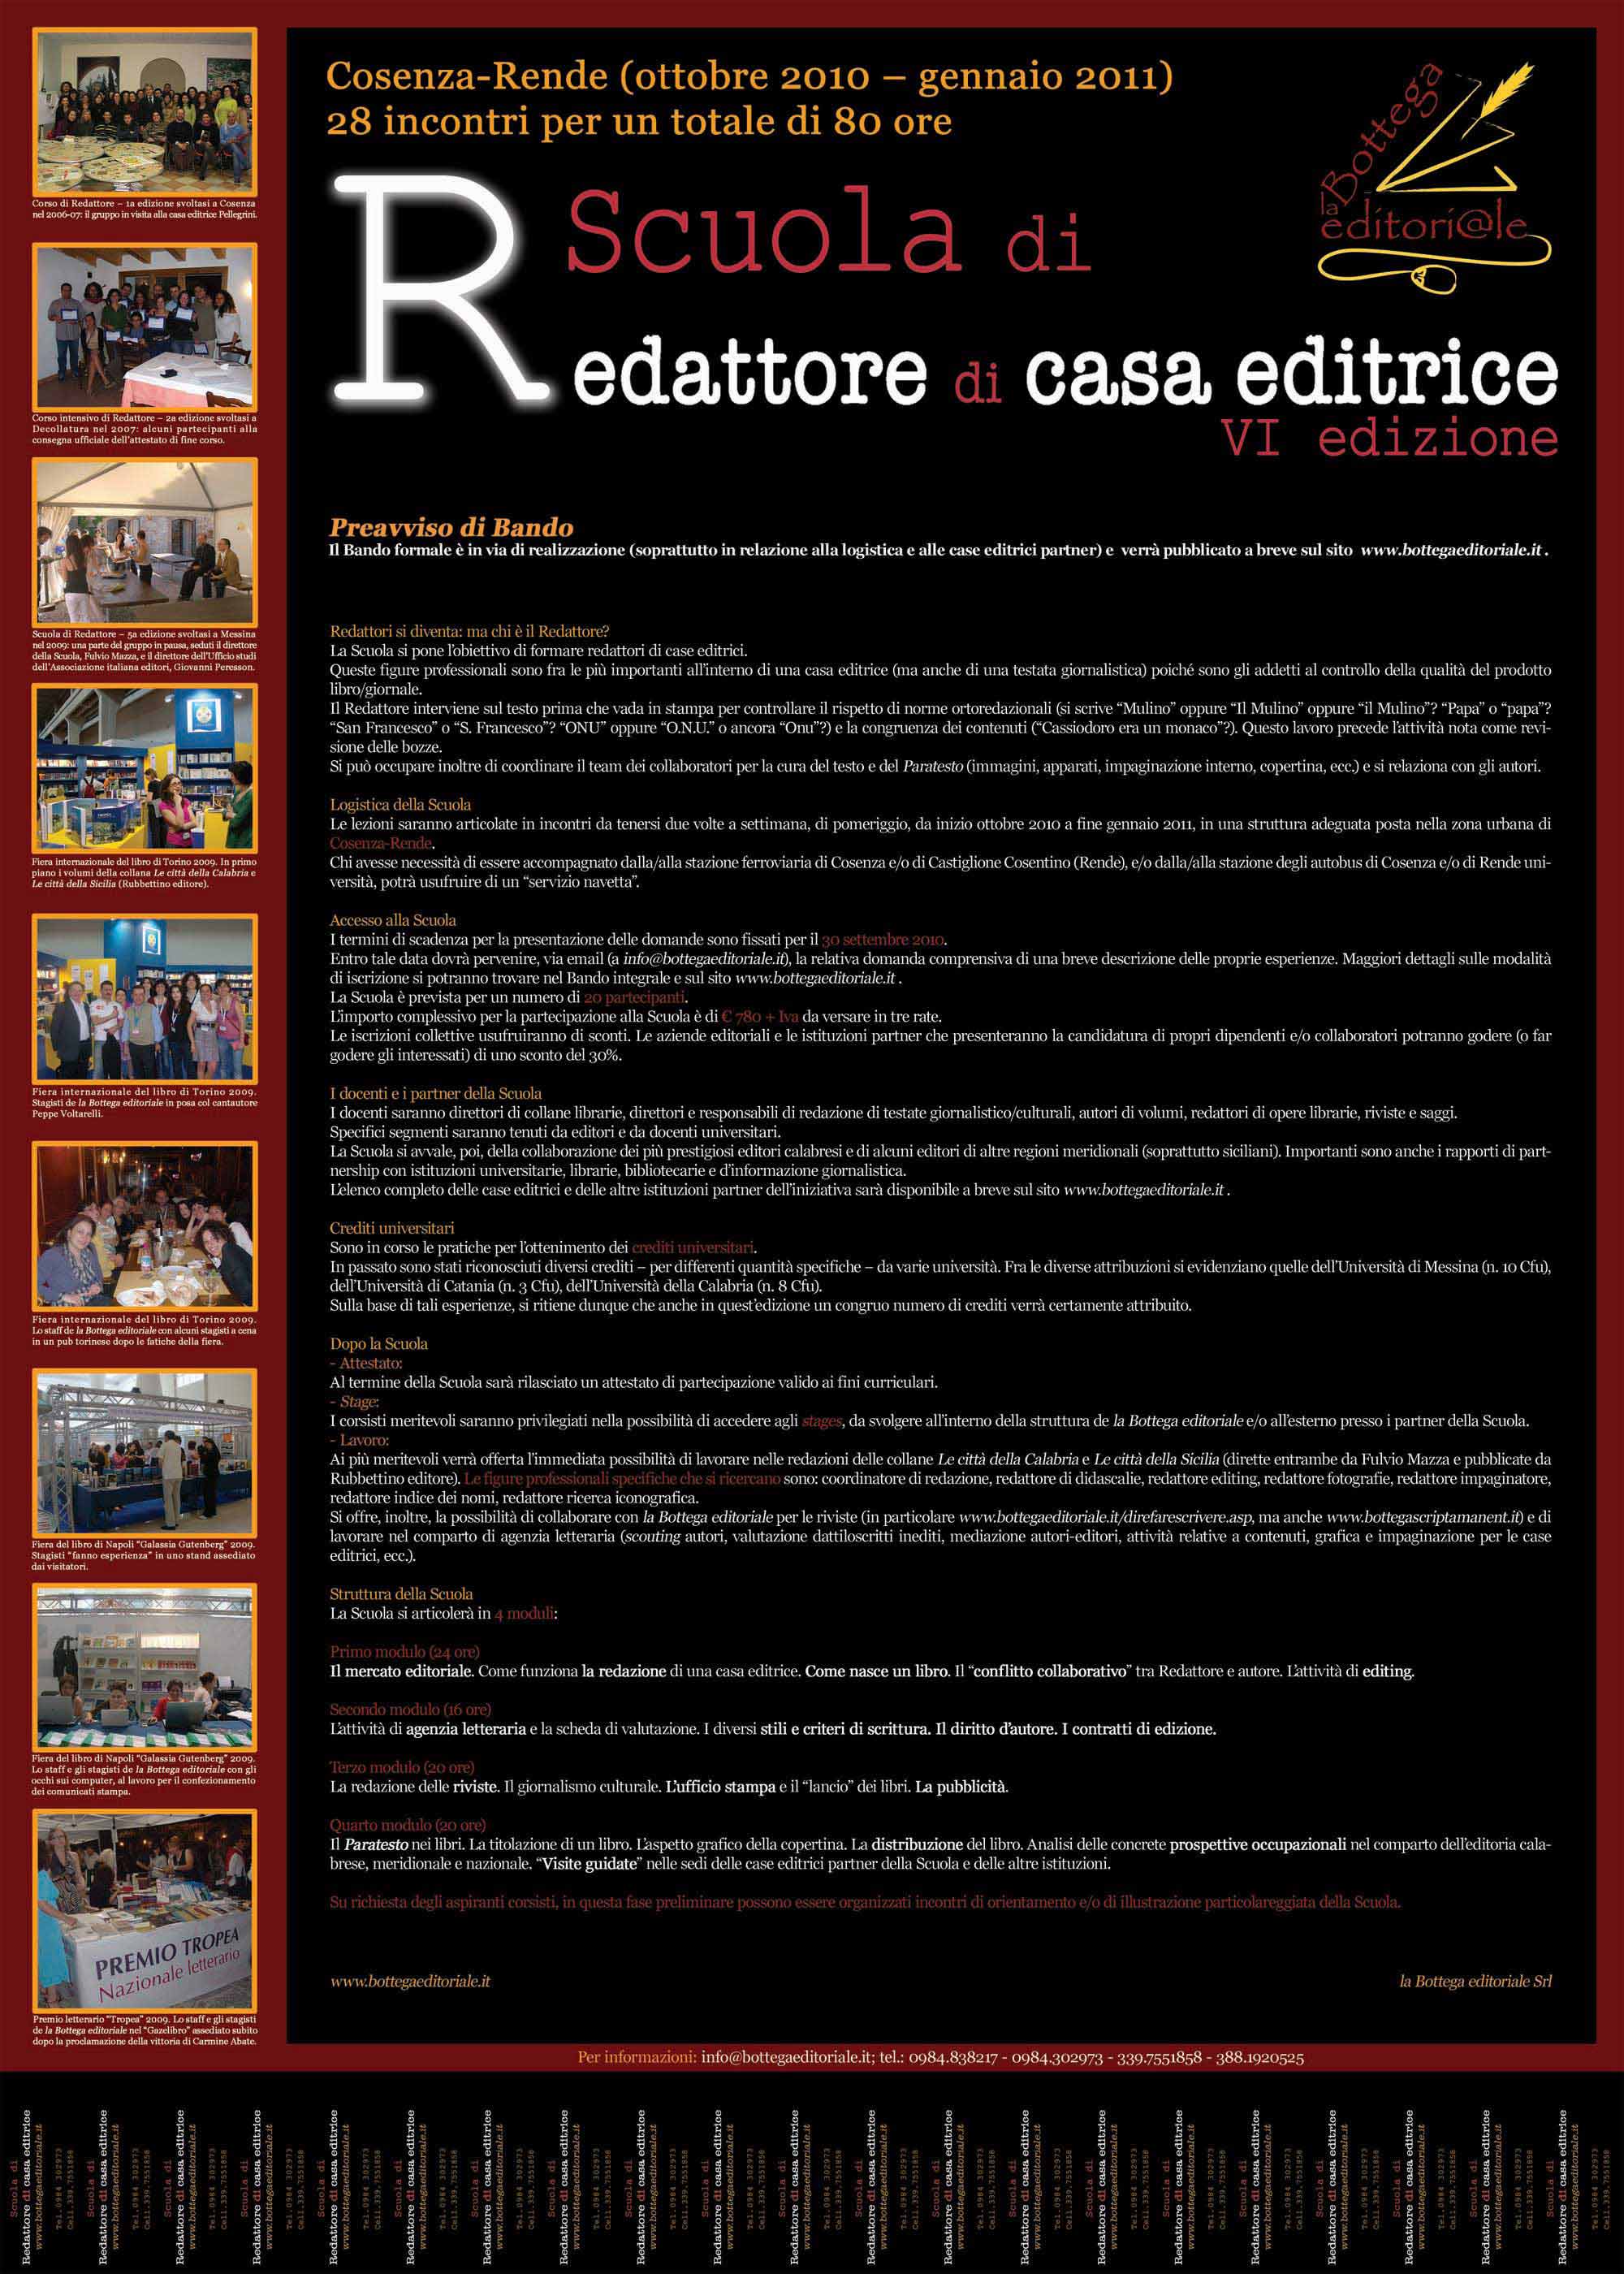 VI edizione_Scuola di Redattore di casa editrice_2010-11_Locandina light.jpg